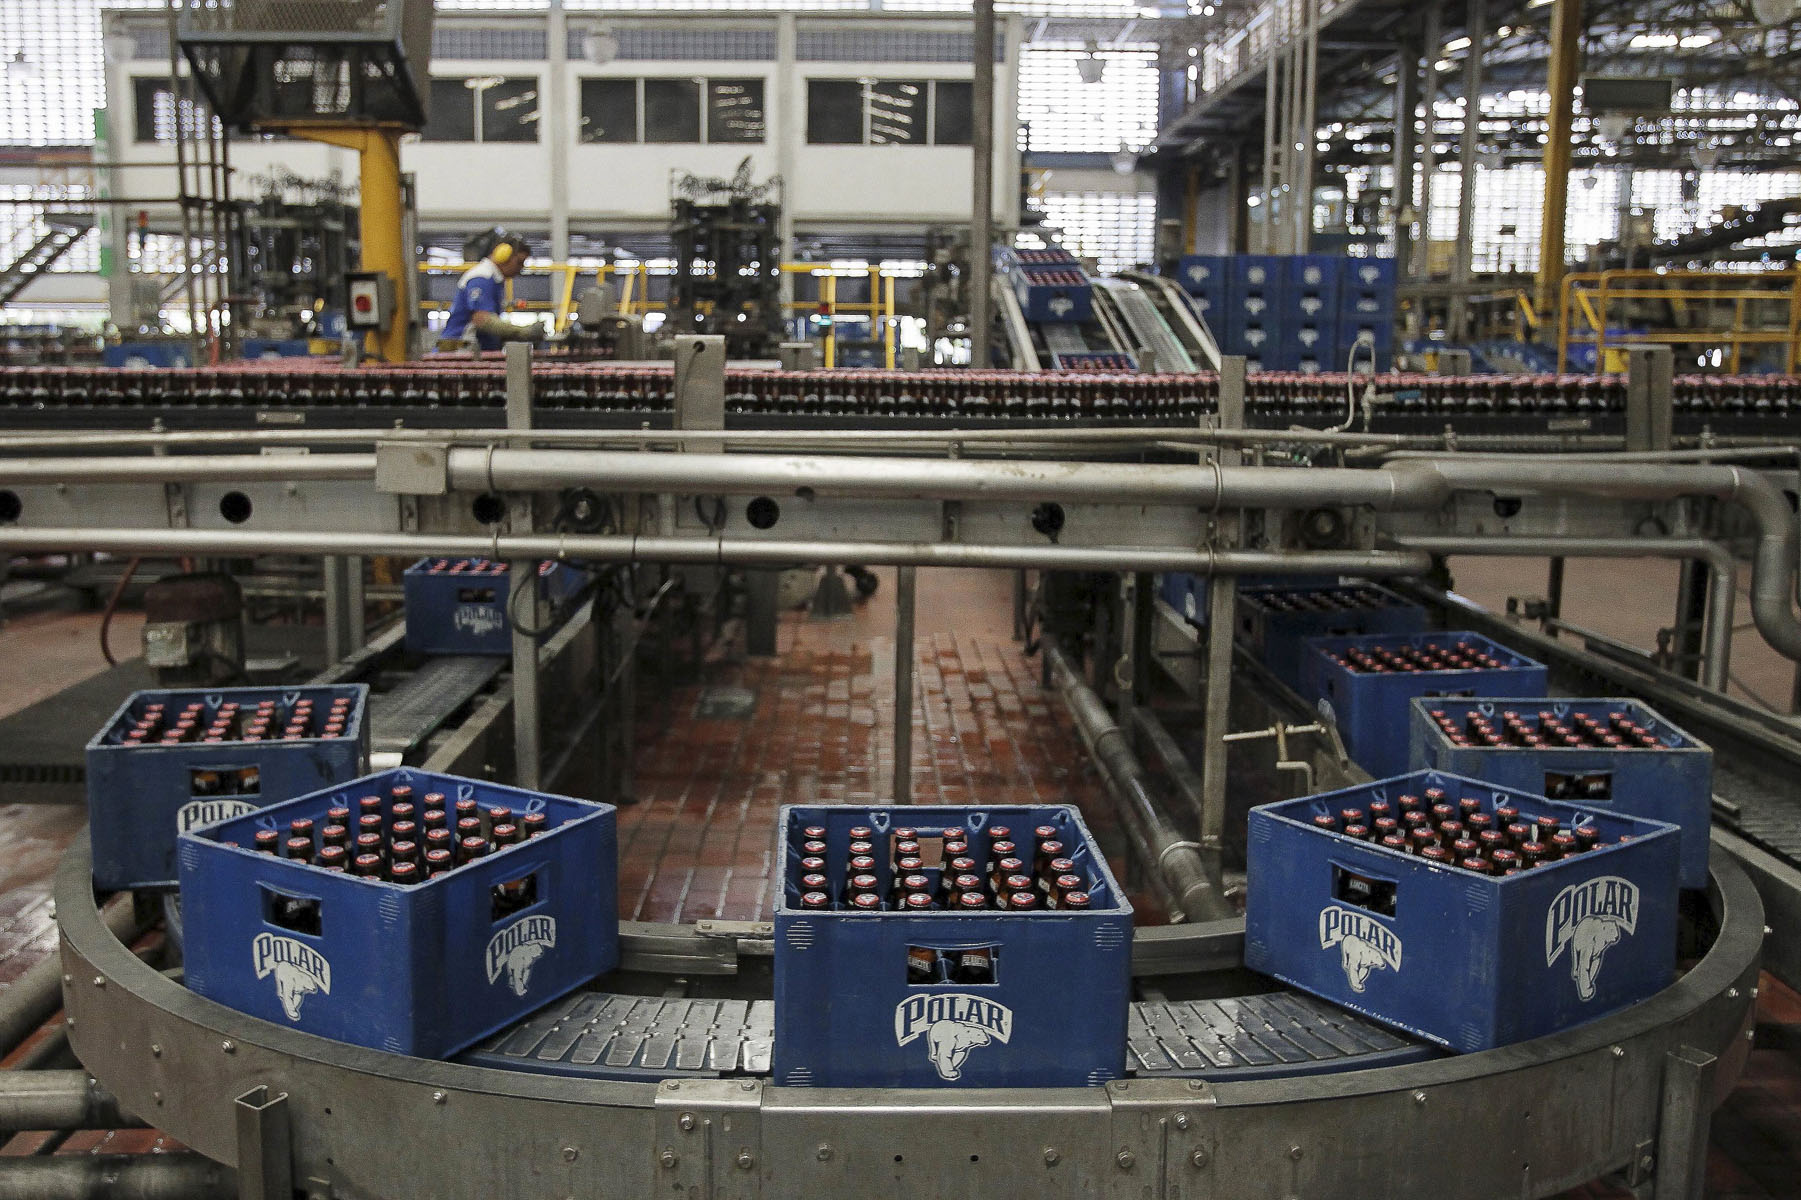 En 15 días se paralizará producción de cerveza según estimaciones del sindicato de Polar